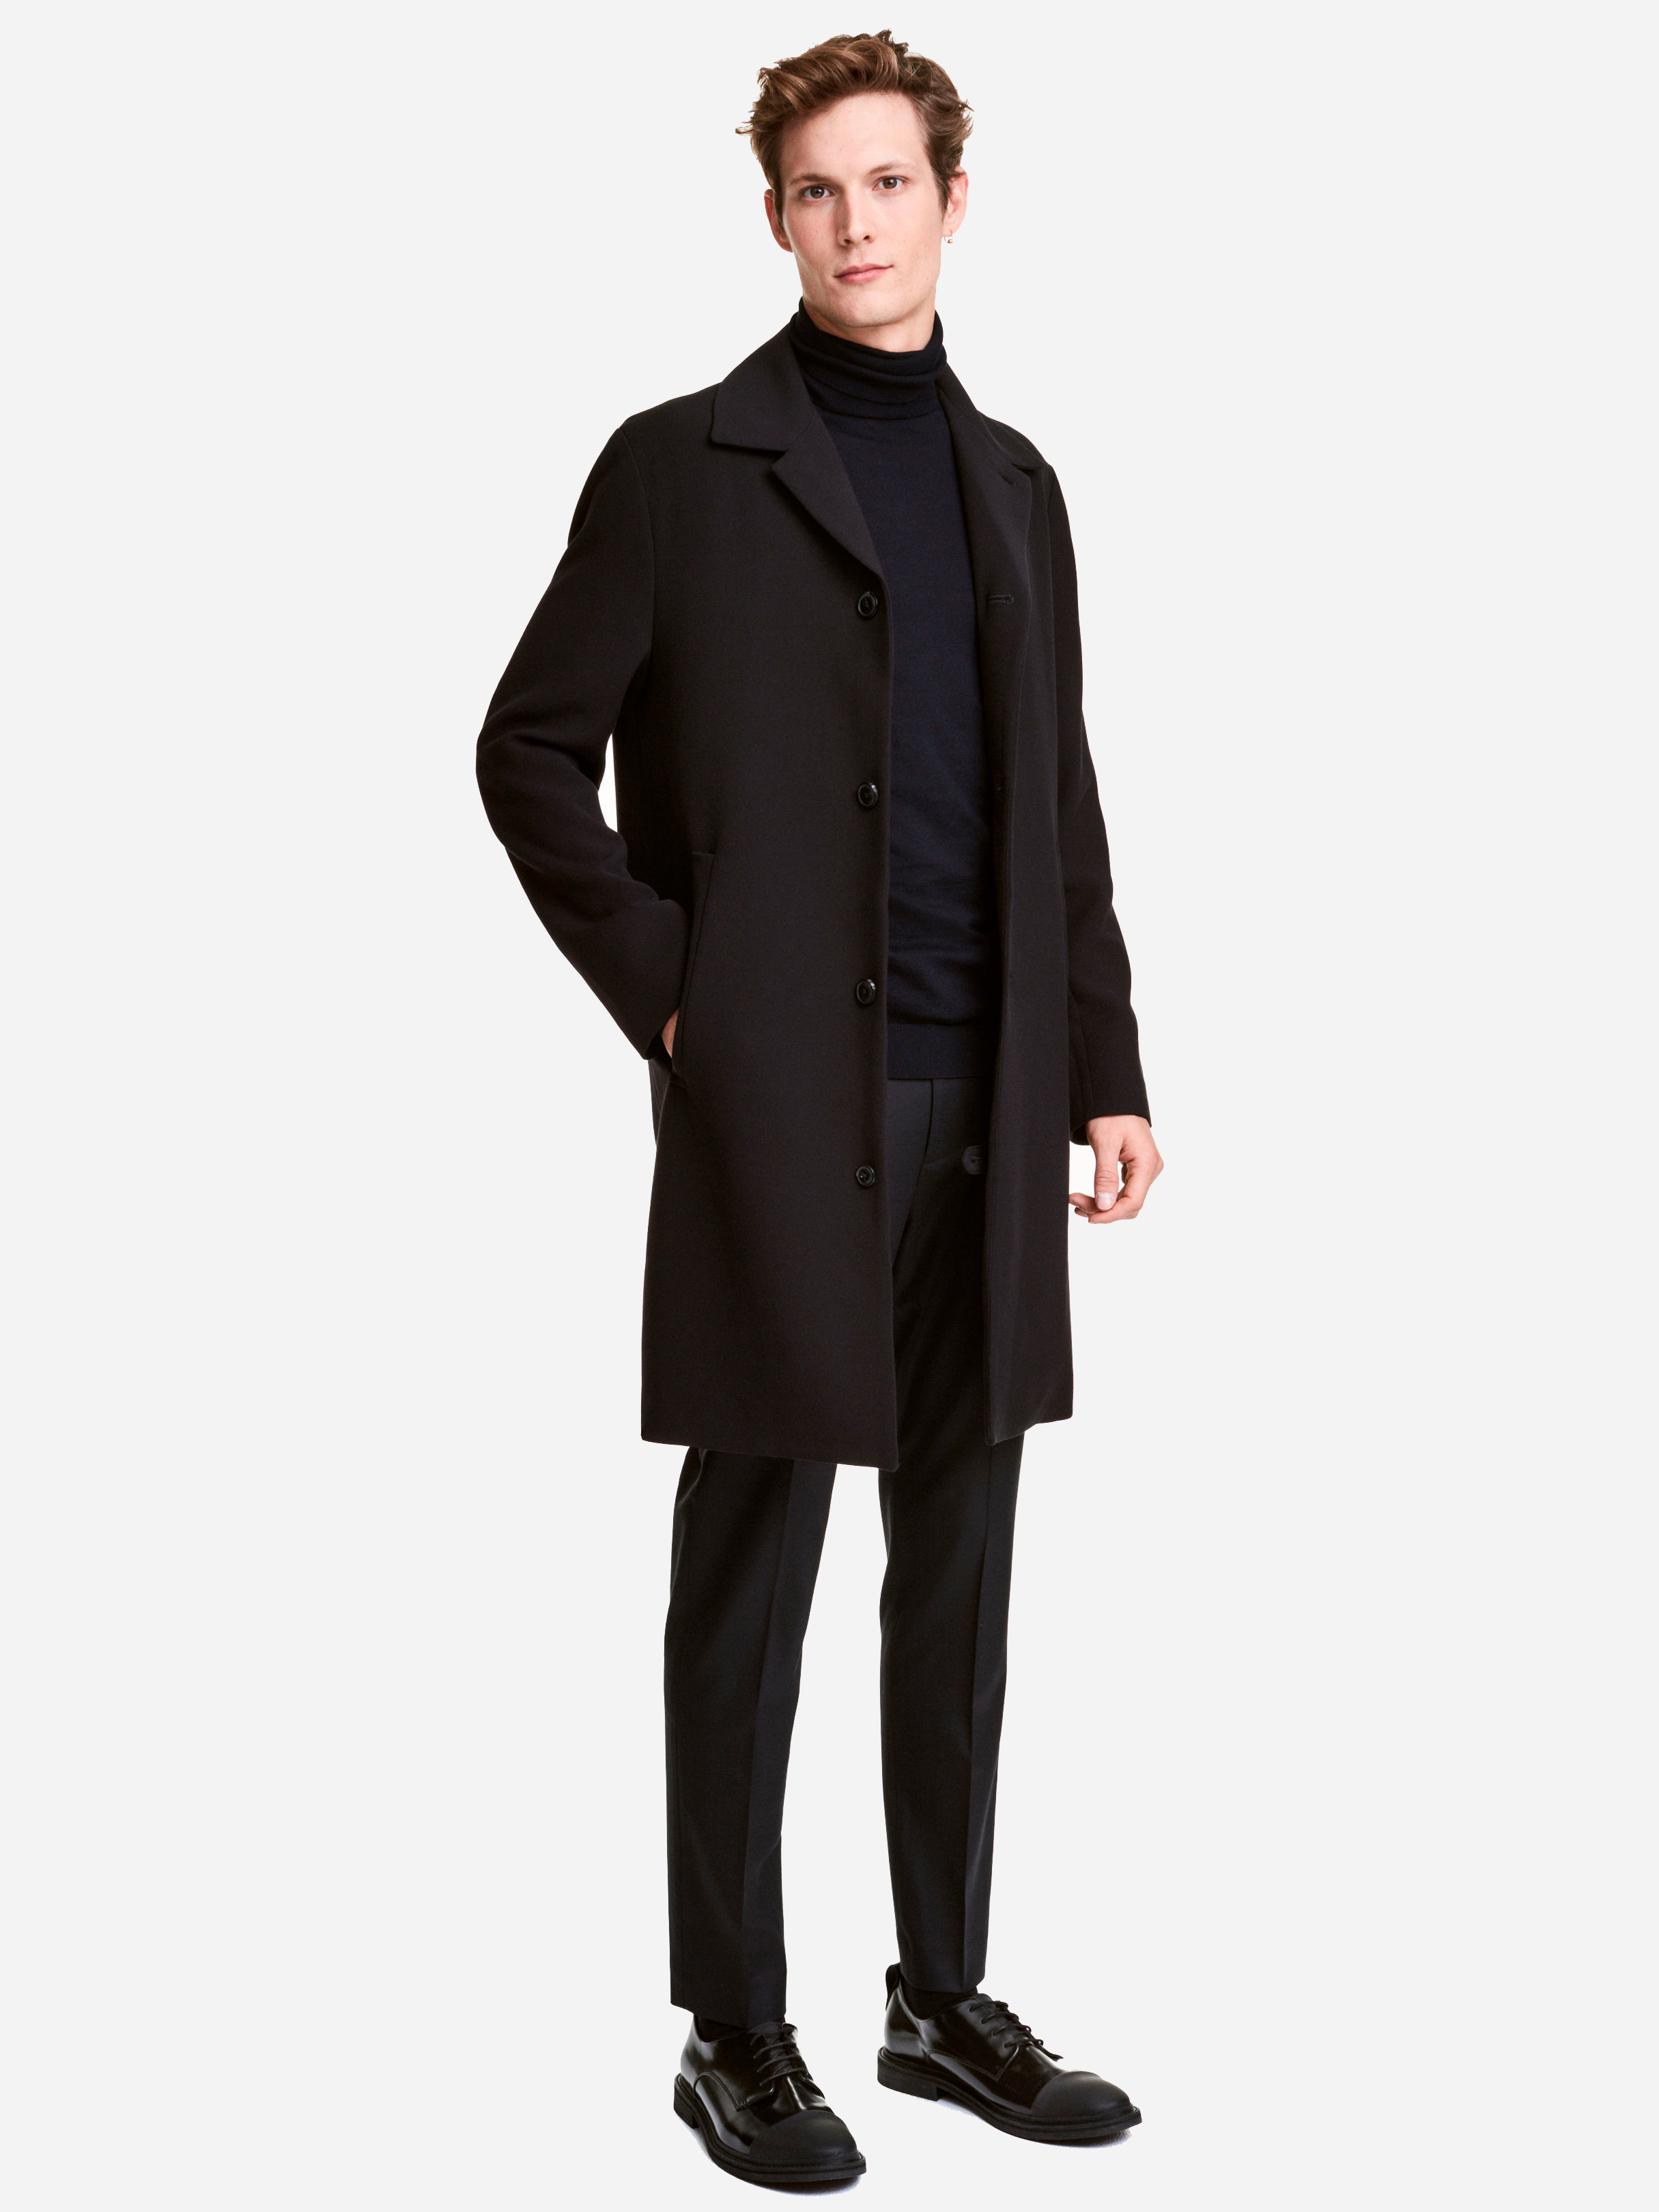 Купить черное пальто мужское. O/N 691410 H/M пальто мужское. 07883010 Мужское пальто HM. Пальто до колен мужское. Черное пальто мужское.